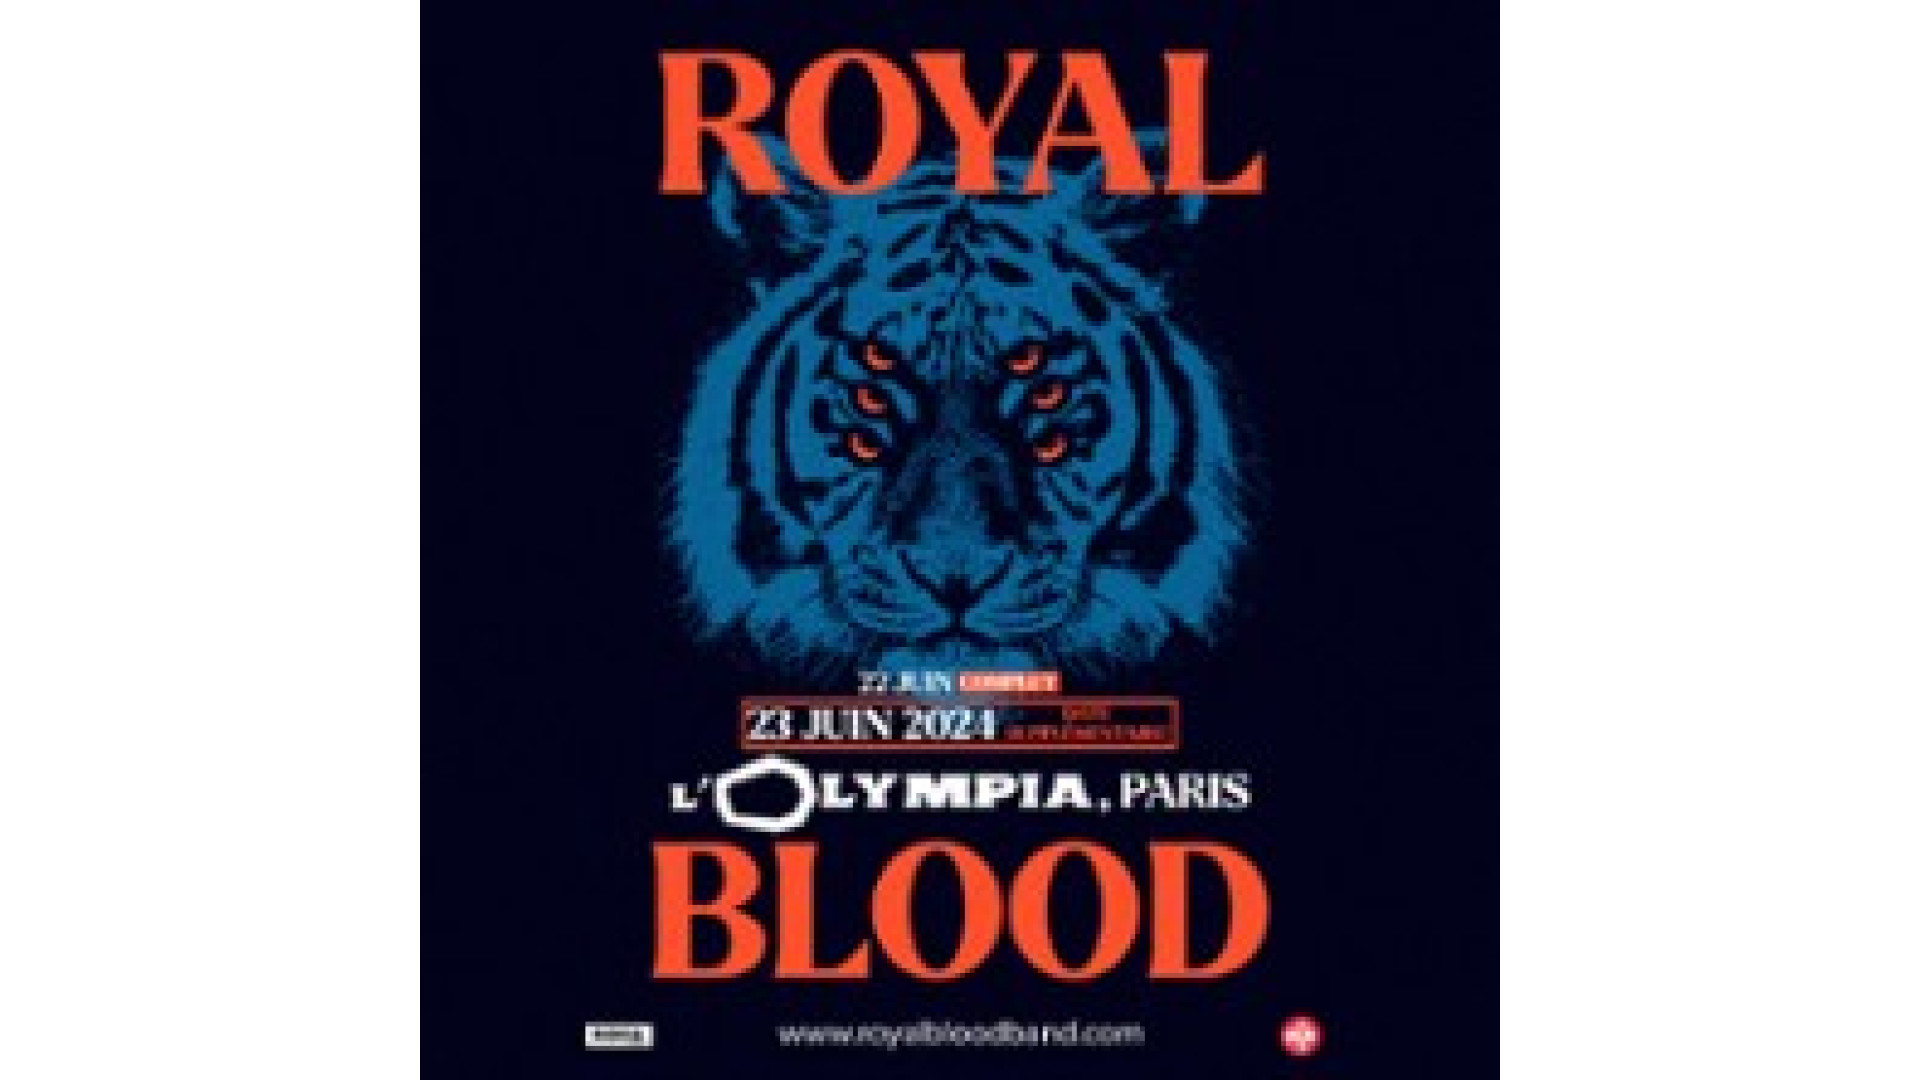 Concert Royal Blood à Paris